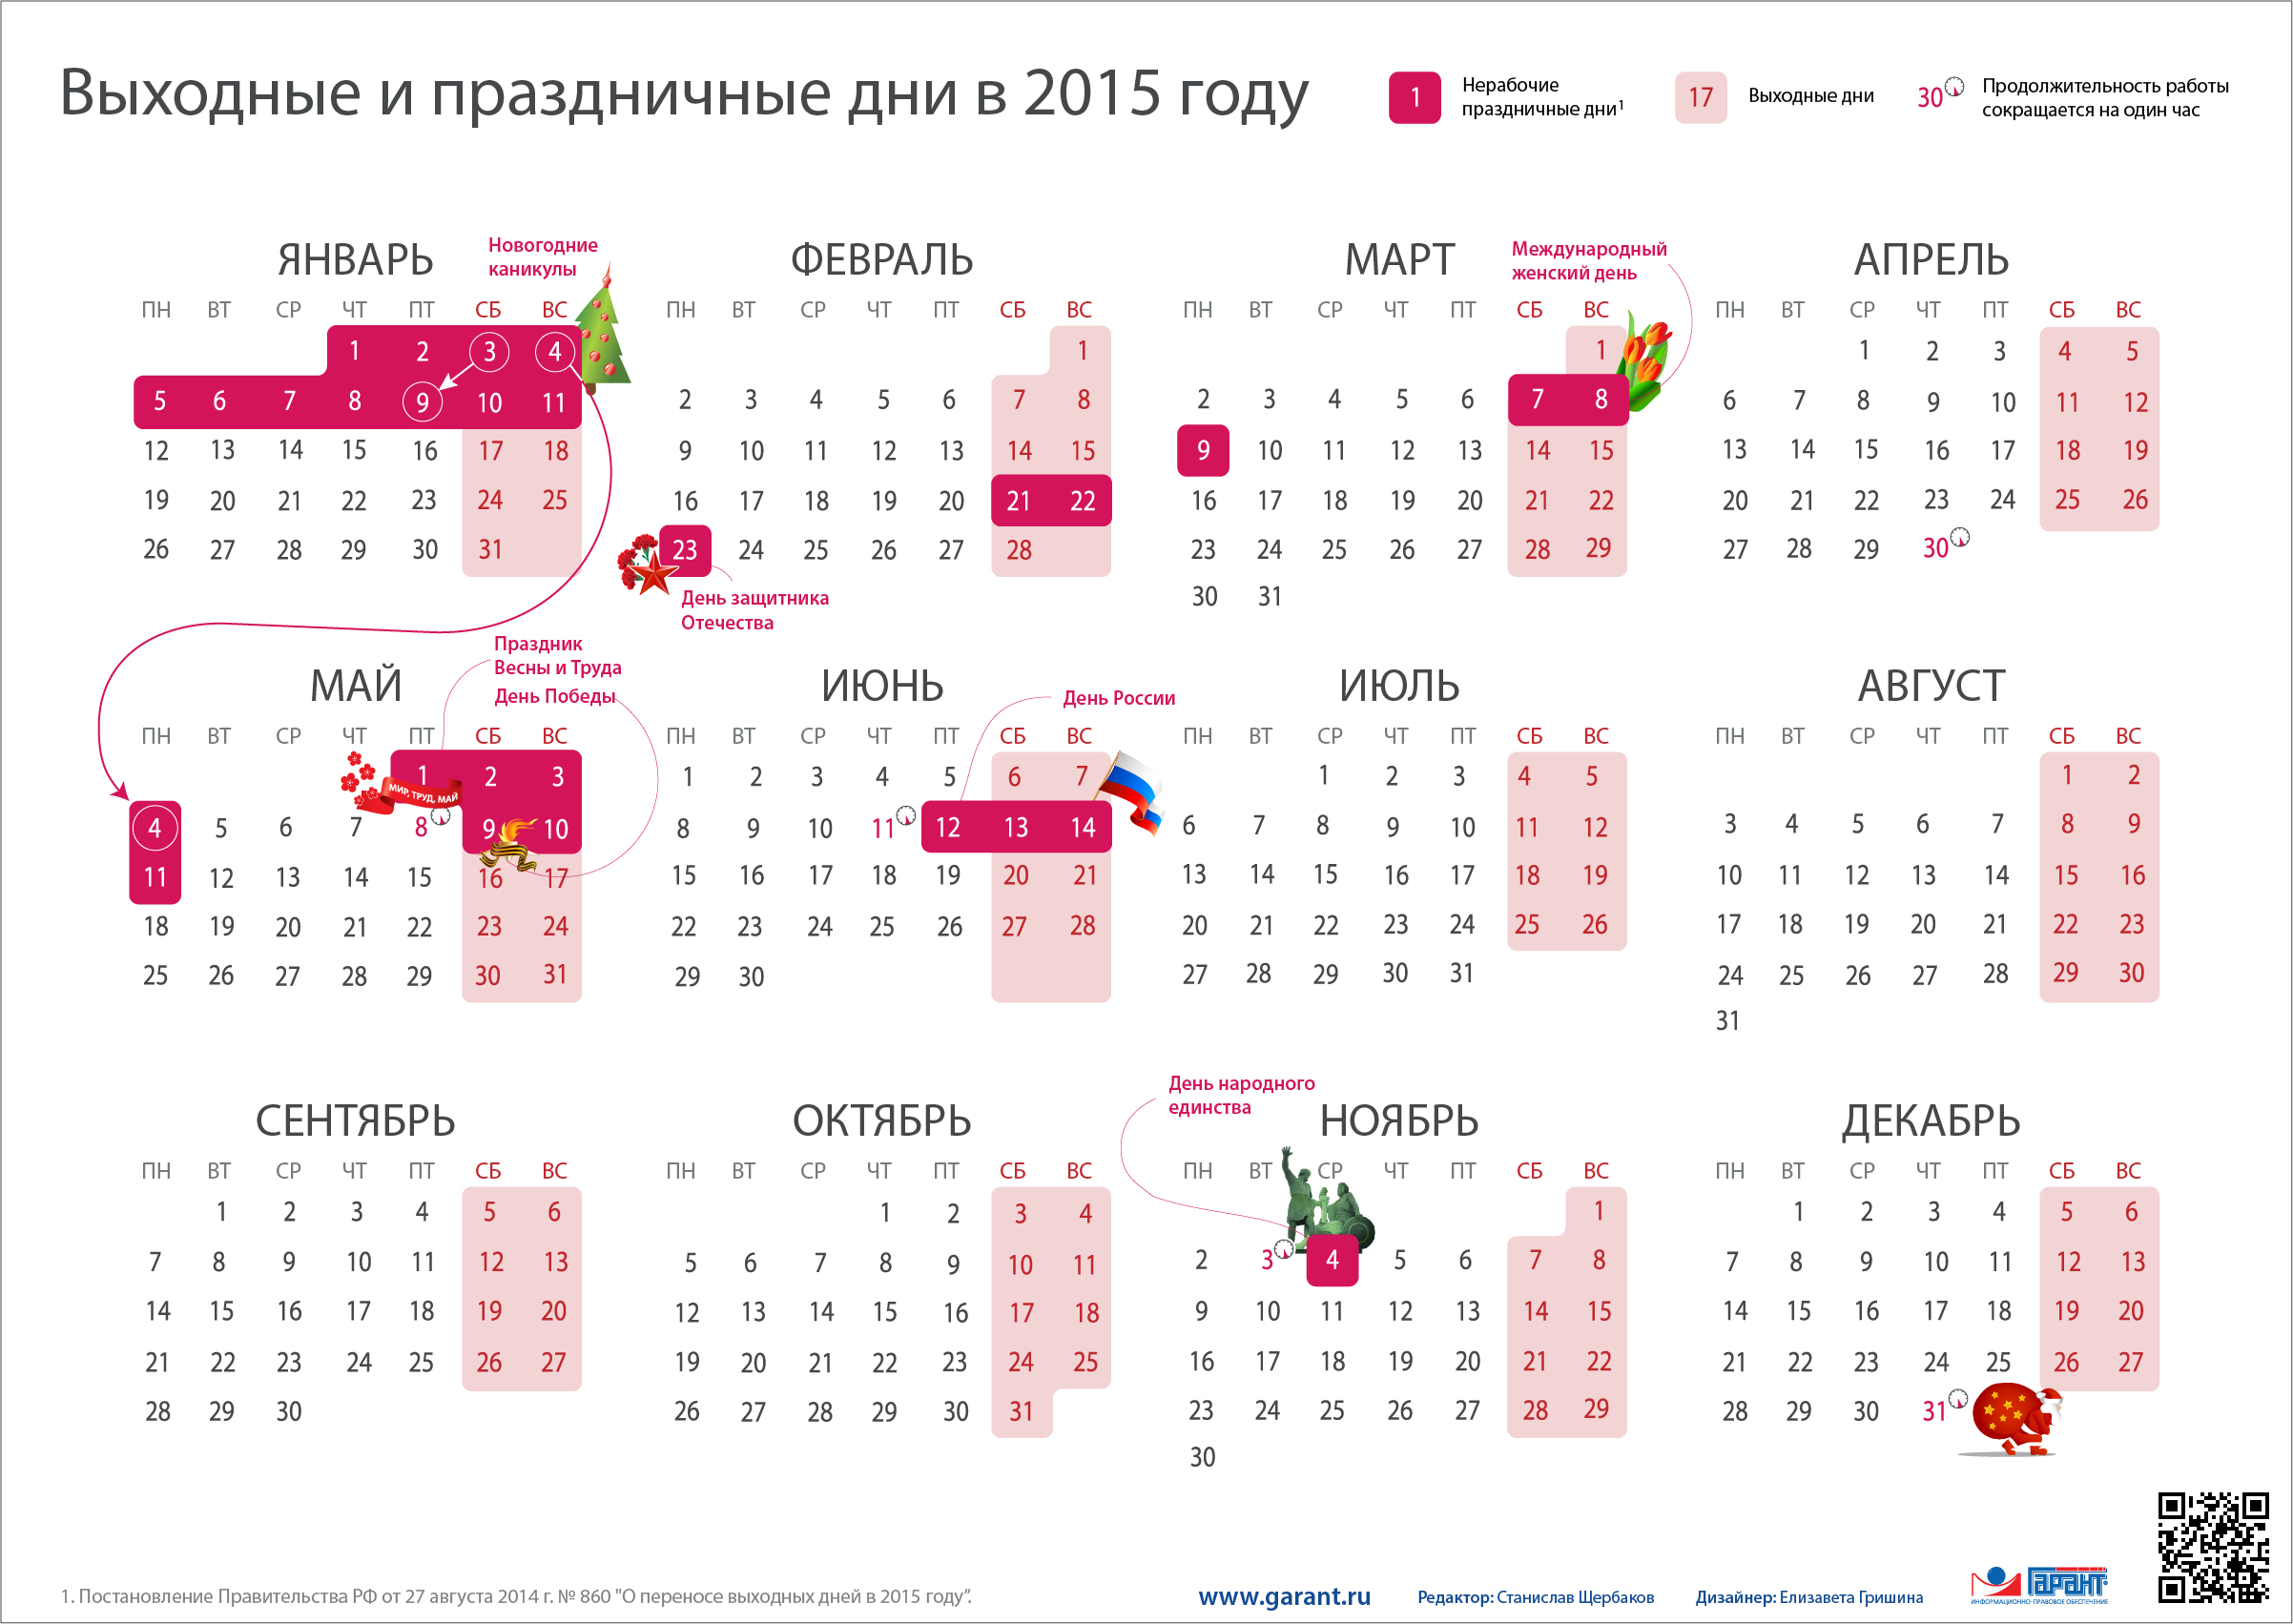 Выходные и праздничные дни в 2015 году